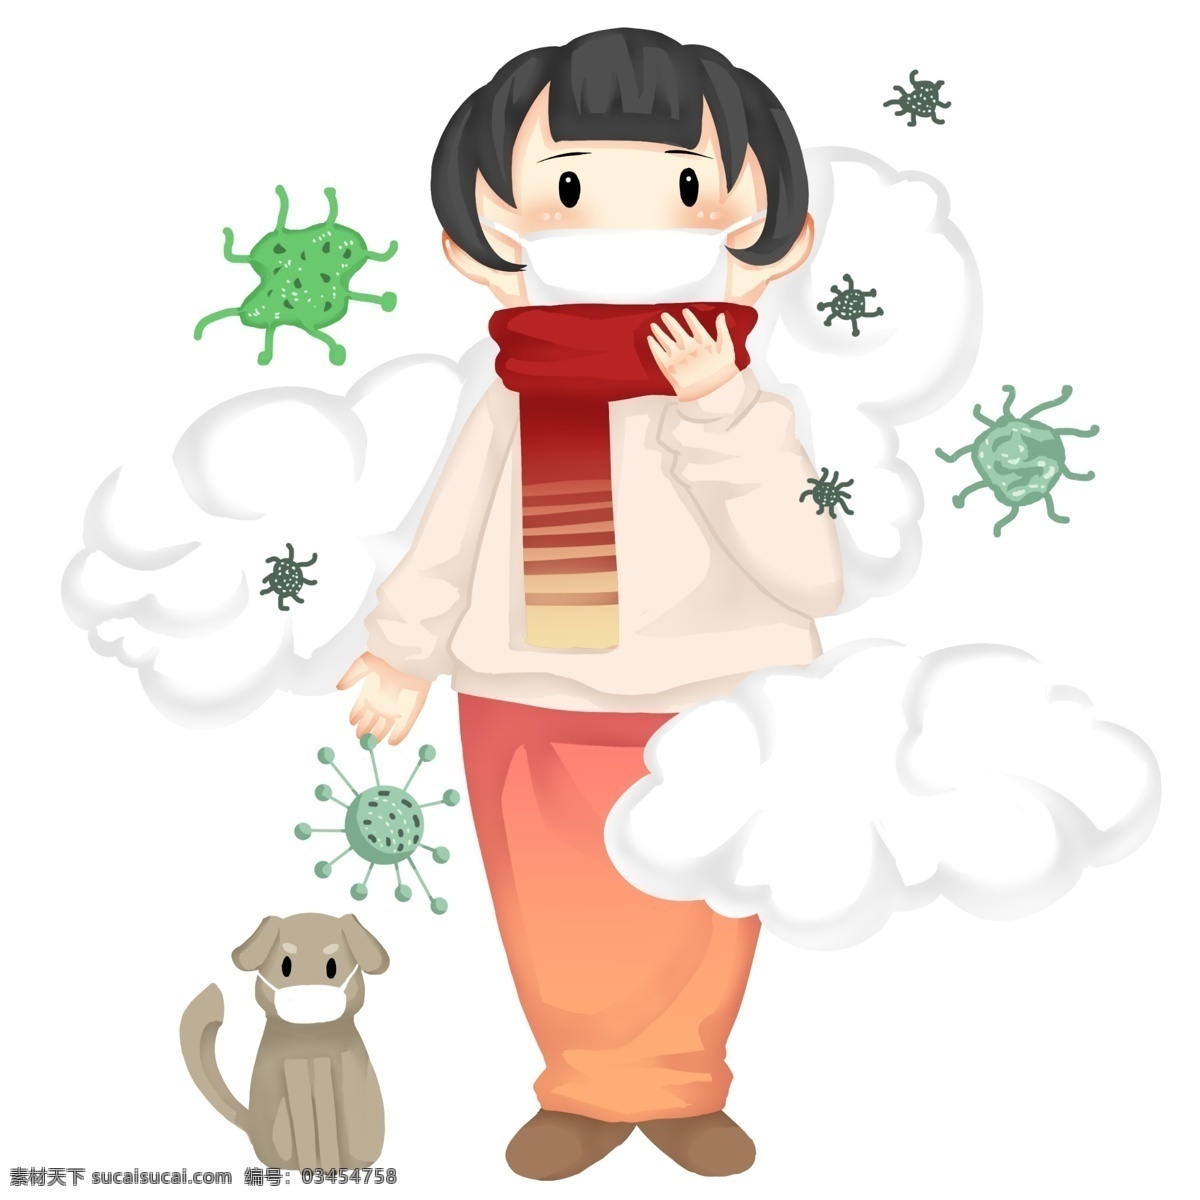 手绘 卡通 冬季 预防 感冒 插画 防流感插画 防流感 病菌 小狗狗 雾霾 污染的空气 病毒 很多病菌